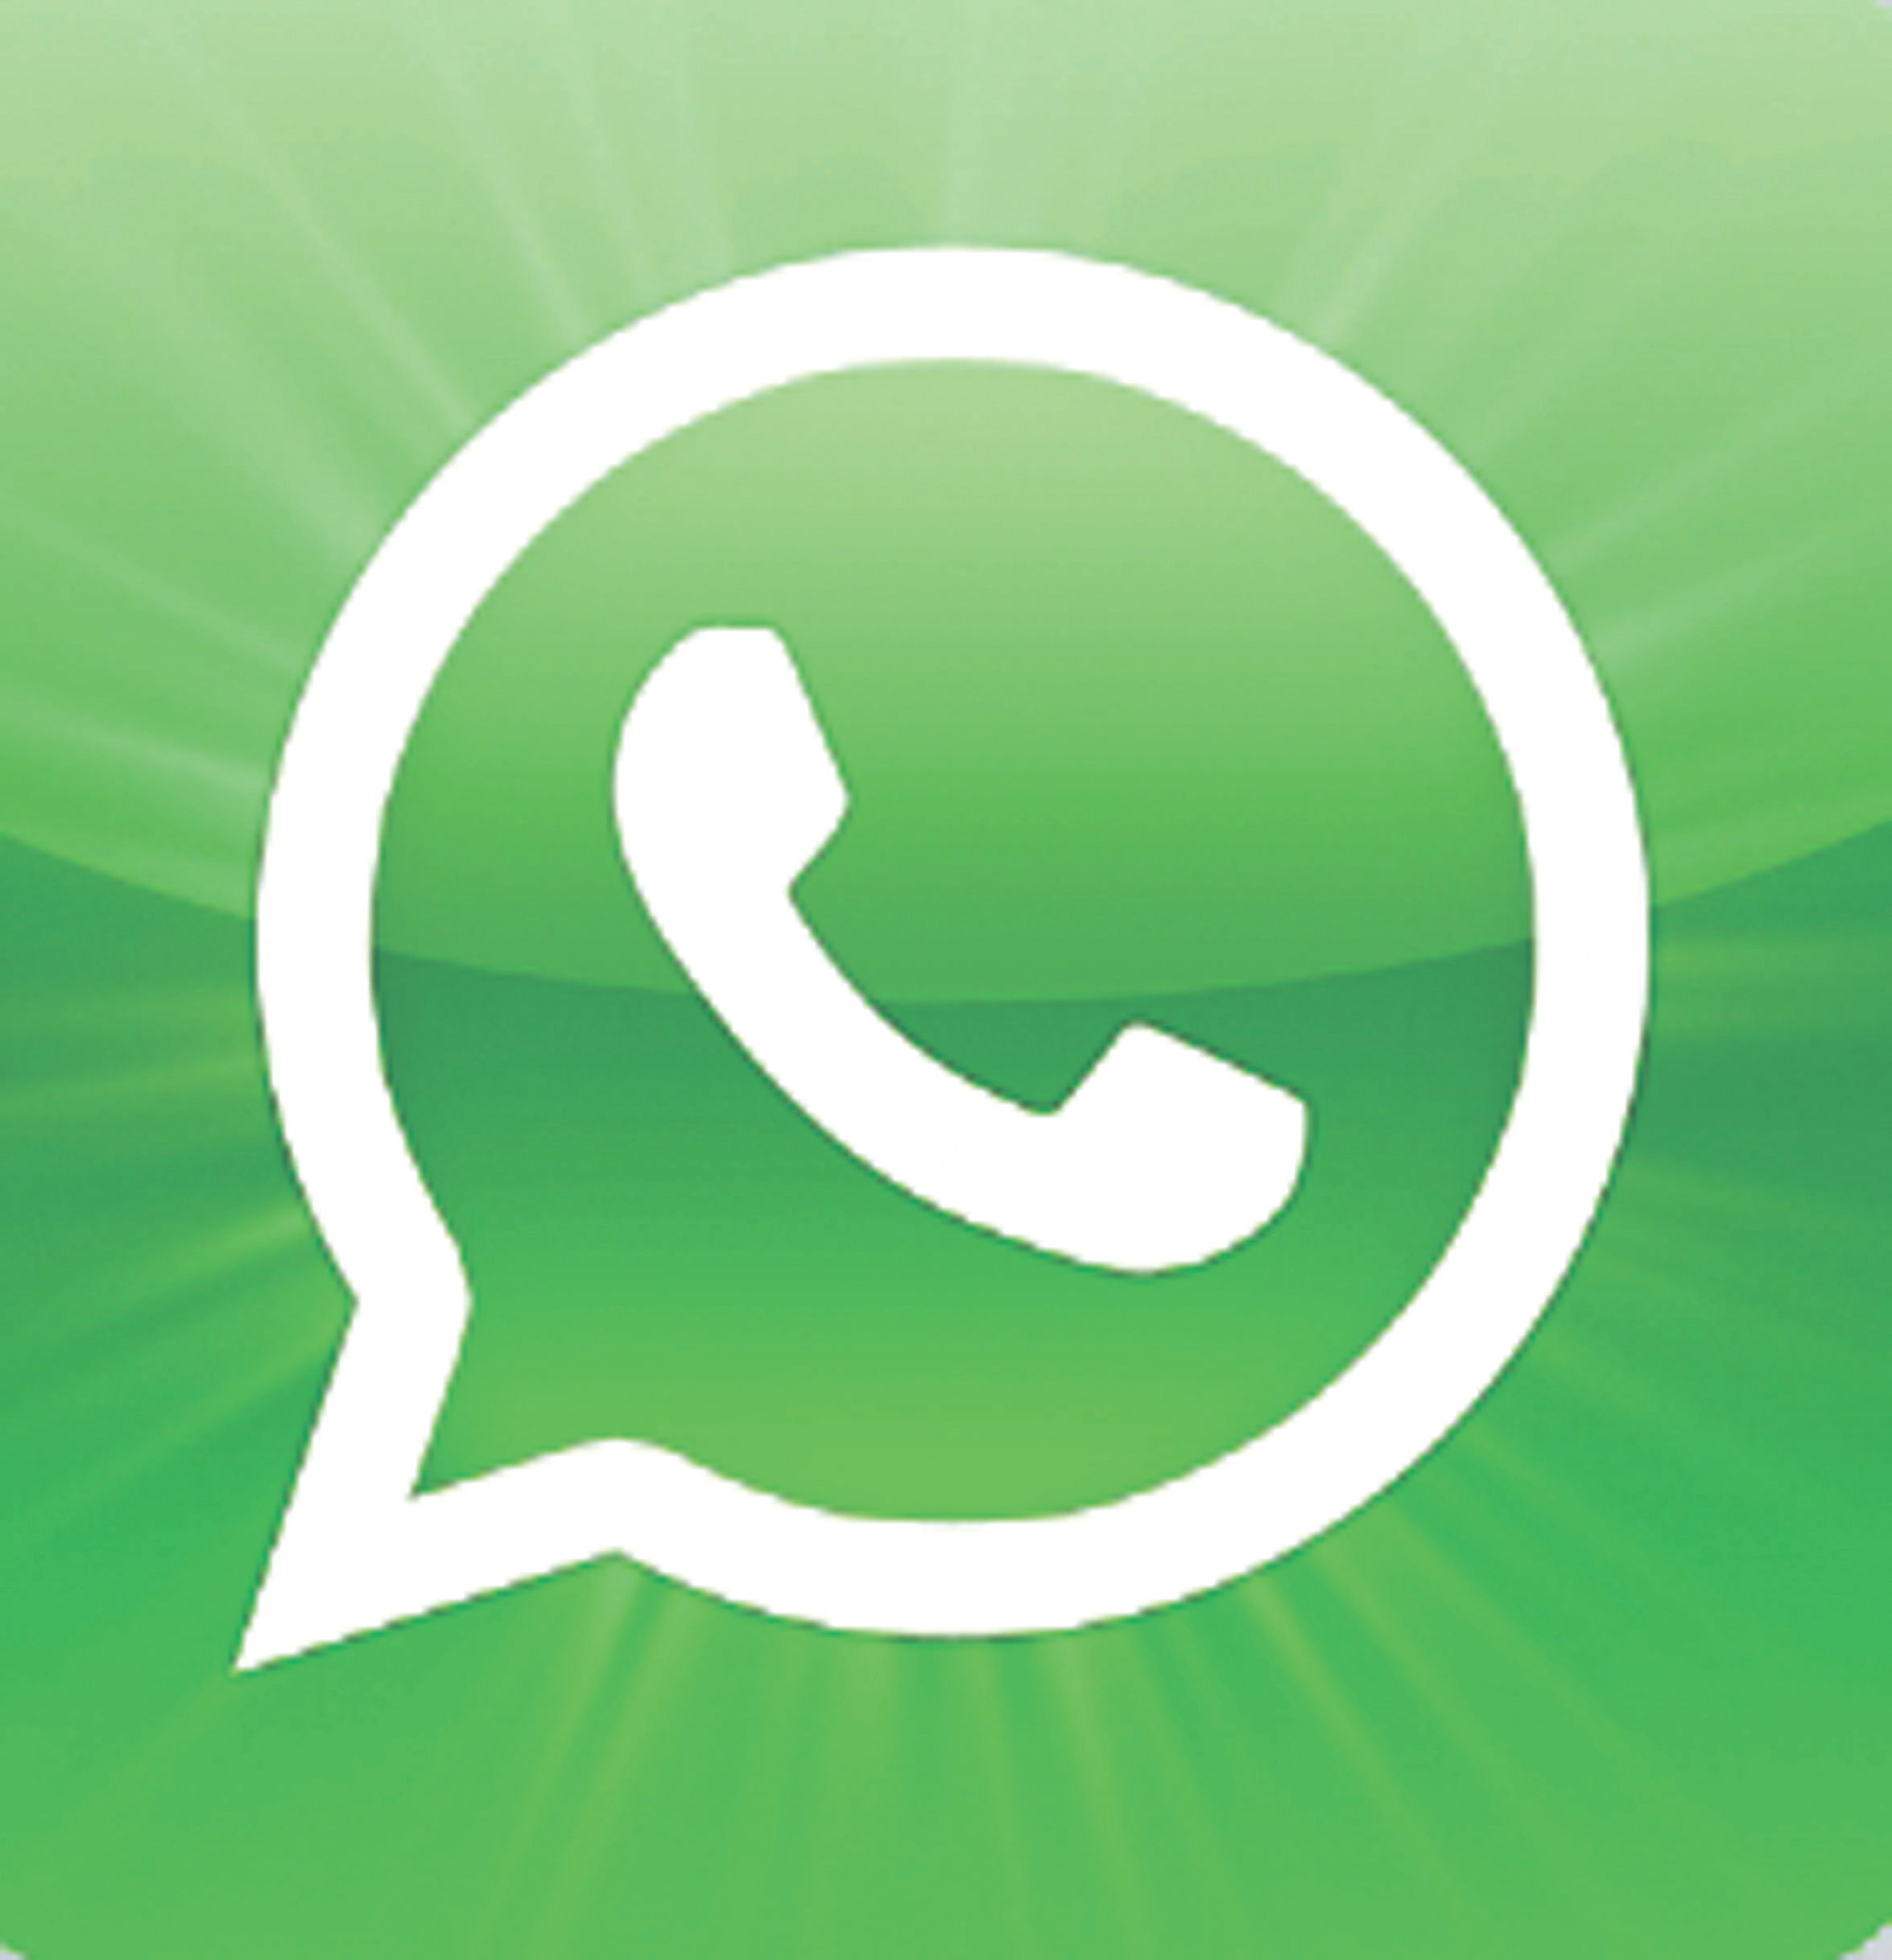 Denuncian que WhatsApp viola normas de privacidad